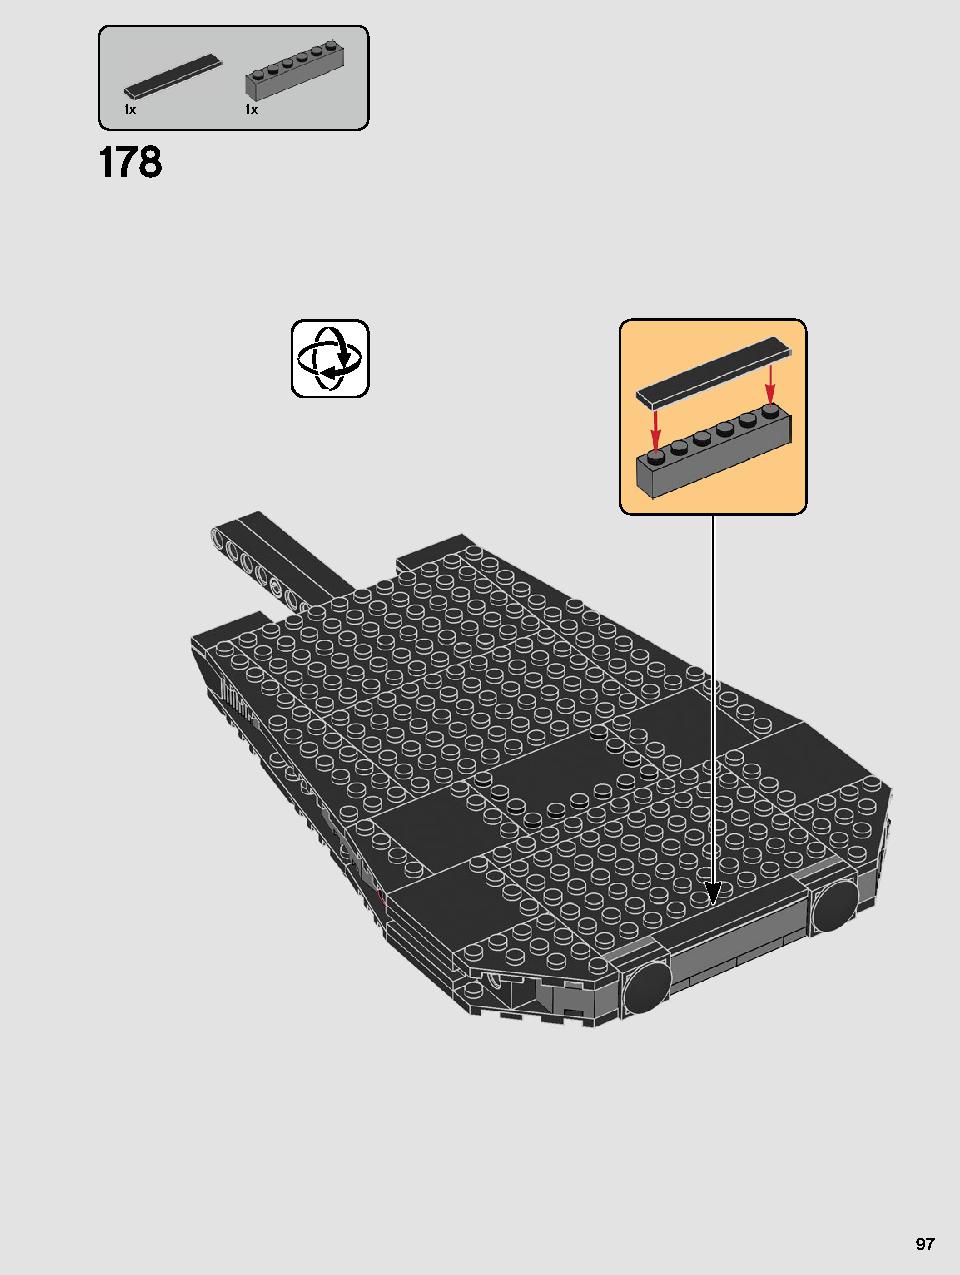 스타워즈 카일로 렌의 셔틀™ 75256 레고 세트 제품정보 레고 조립설명서 97 page